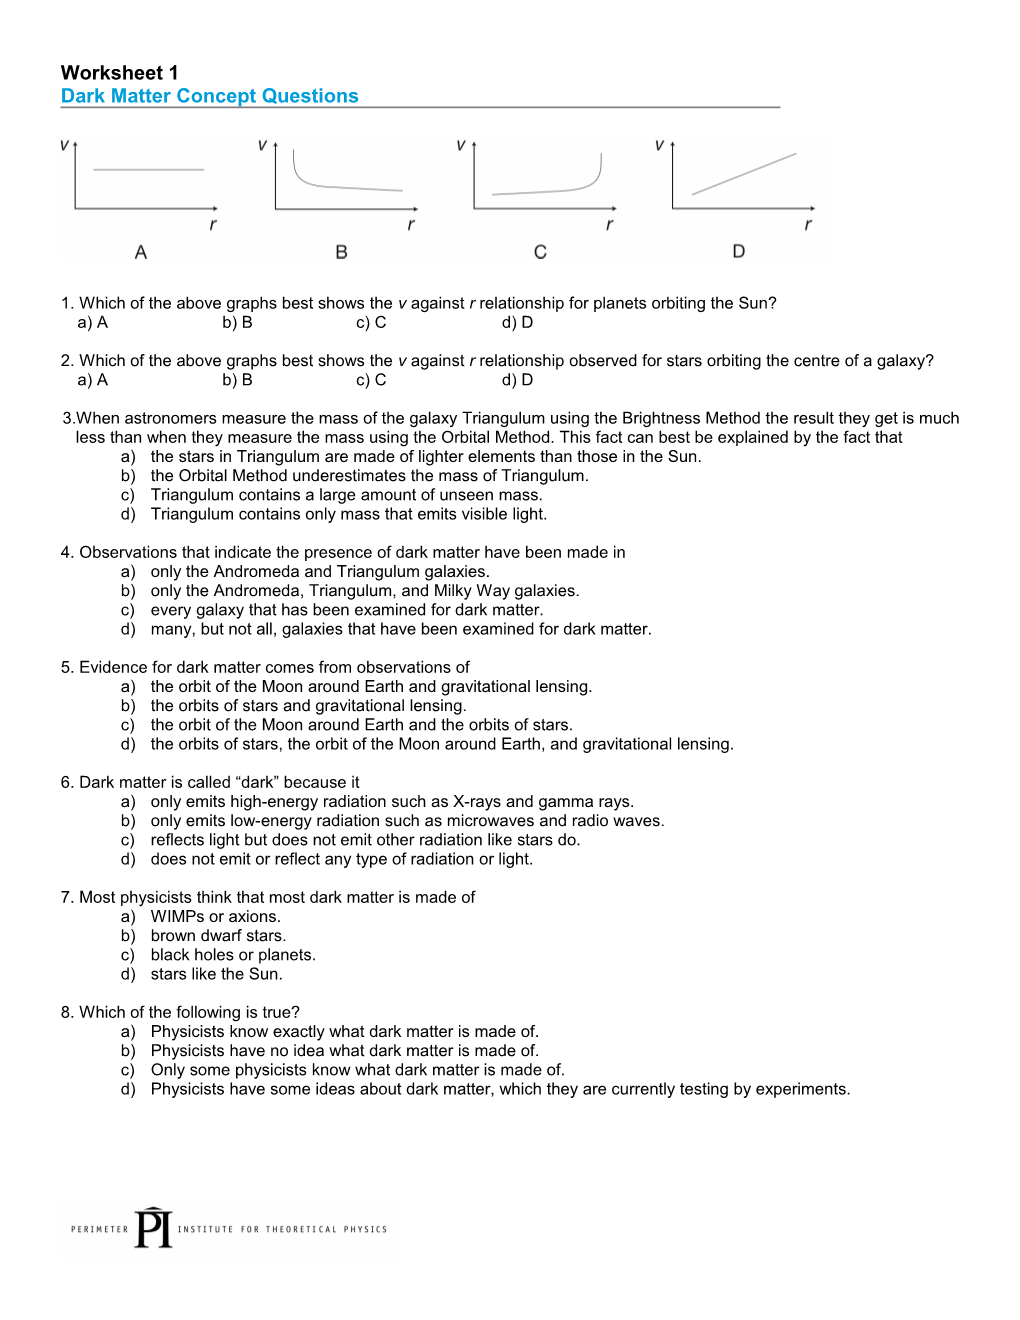 Worksheet 1 Dark Matter Concept Questions